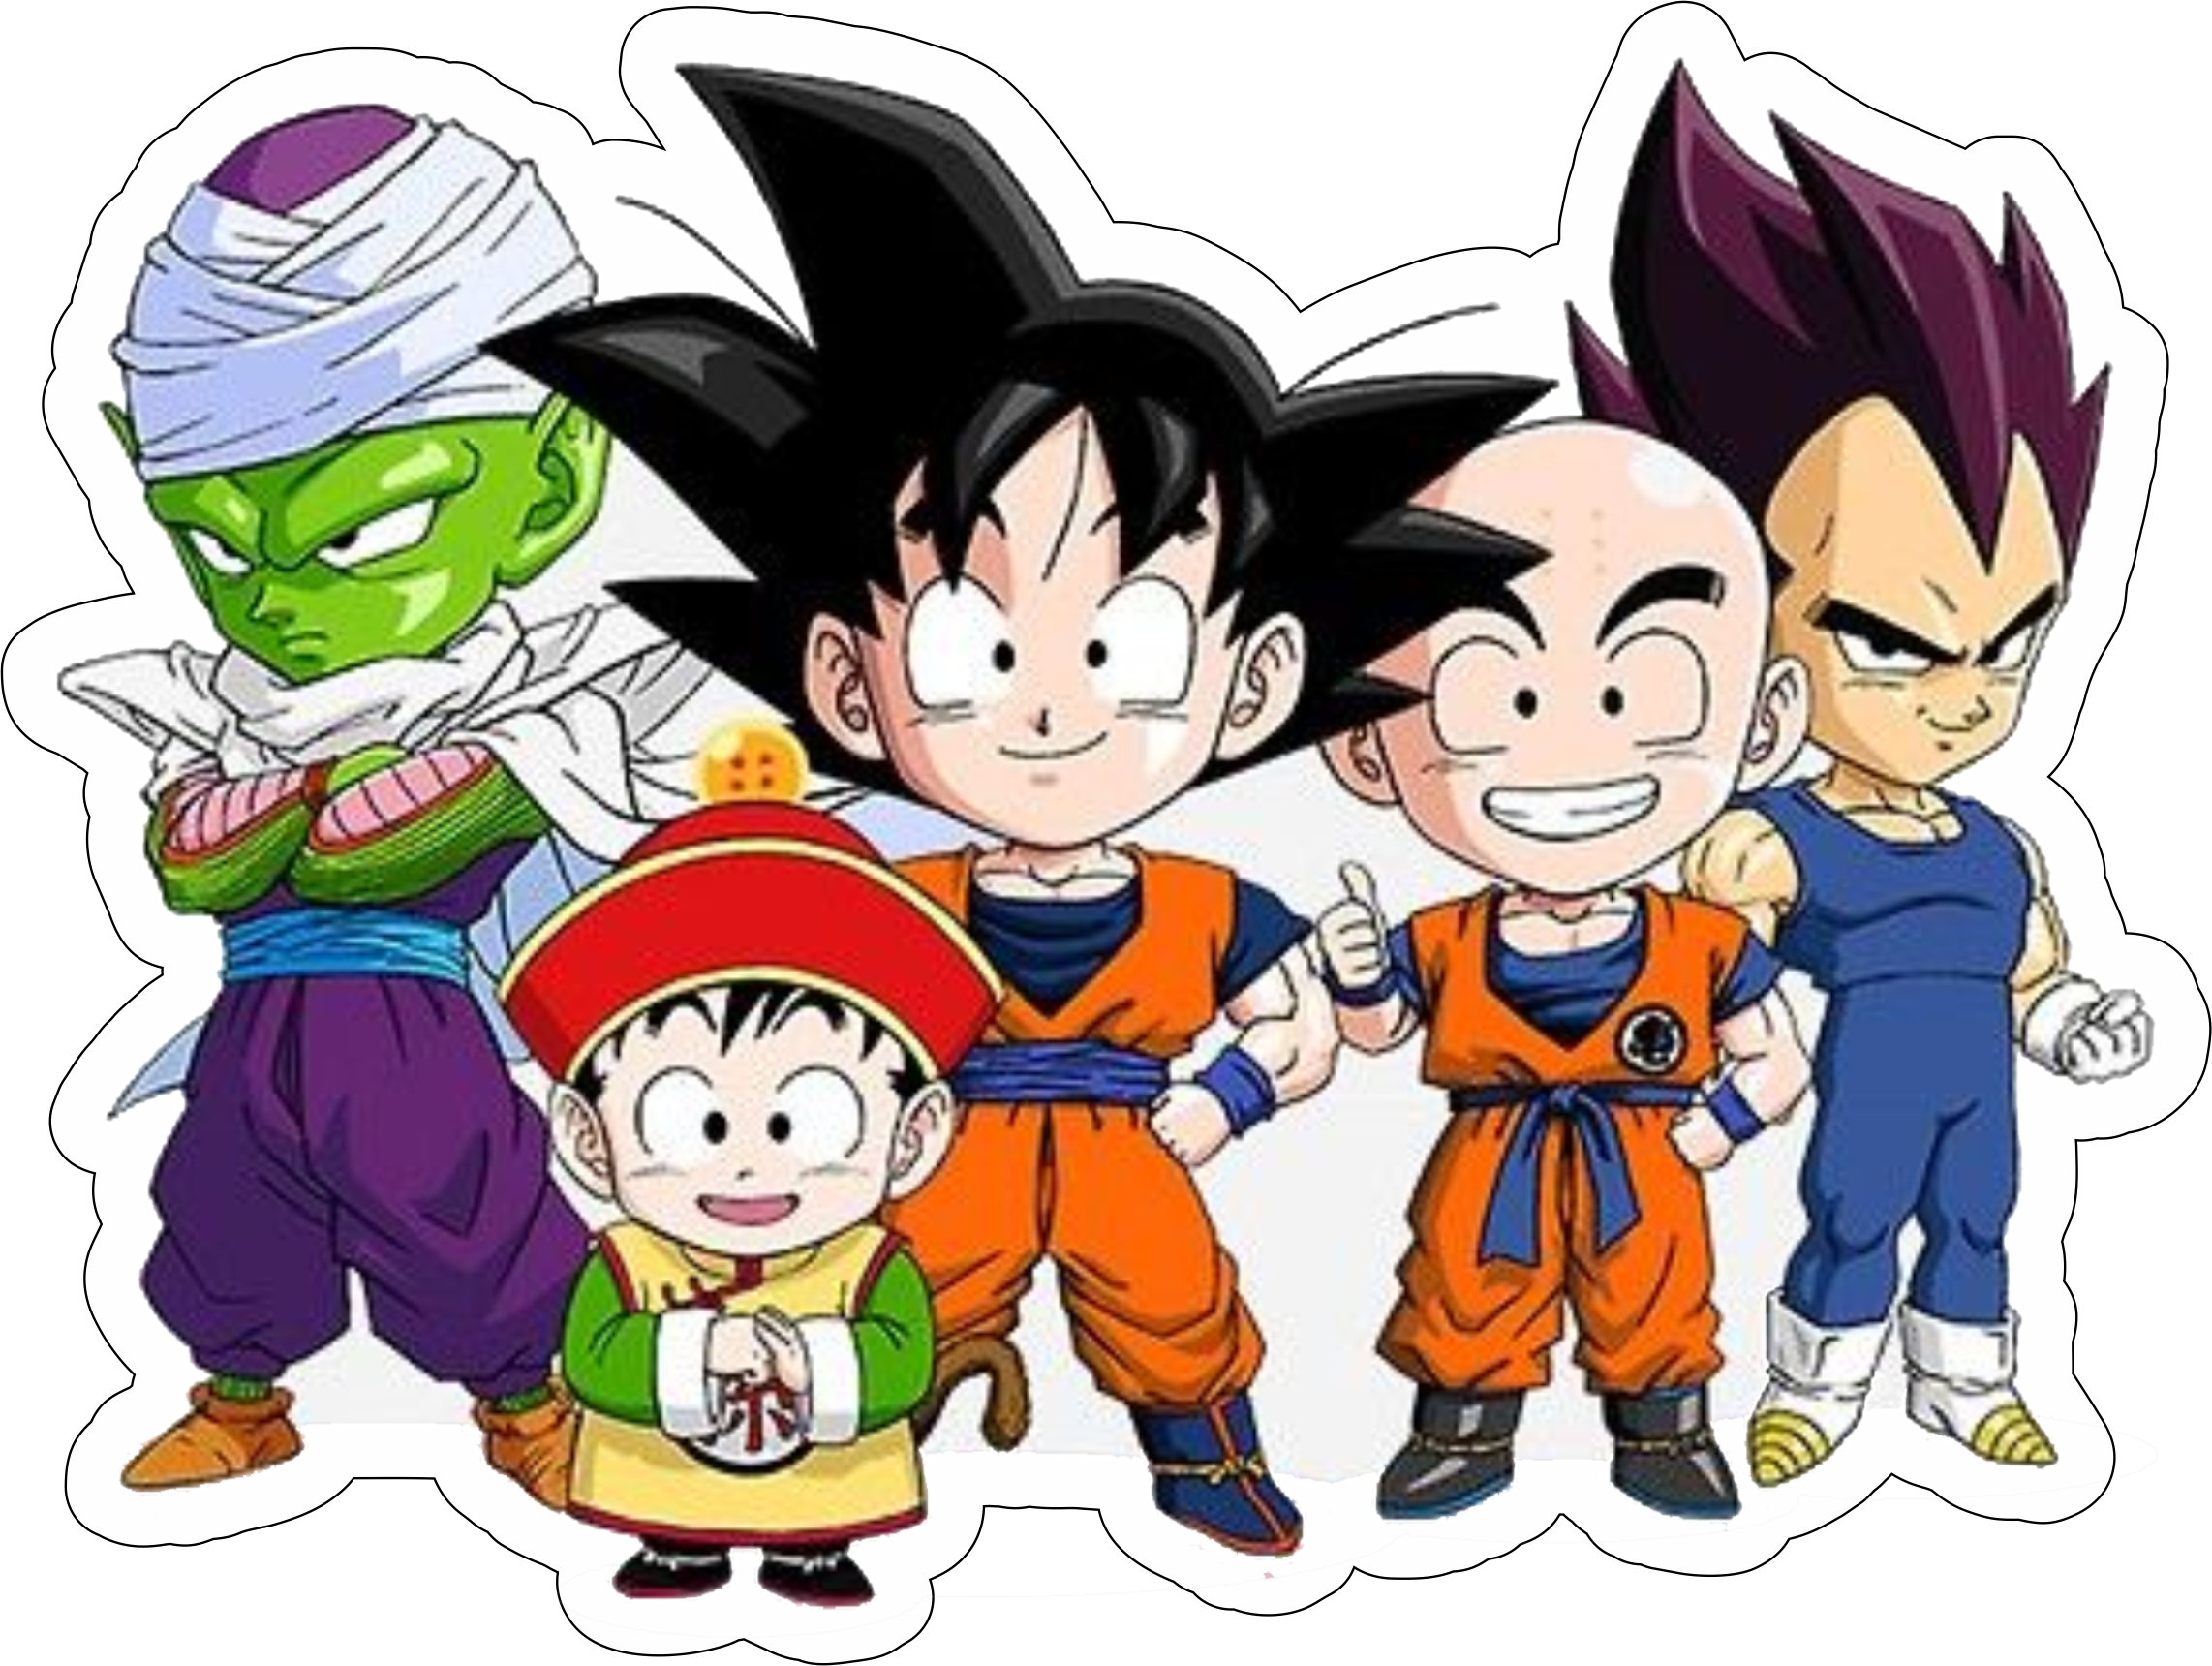 Dragon ball z super Goku guerreiros Z saga boo cute desenho infantil anime  fundo transparente pack de imagens png